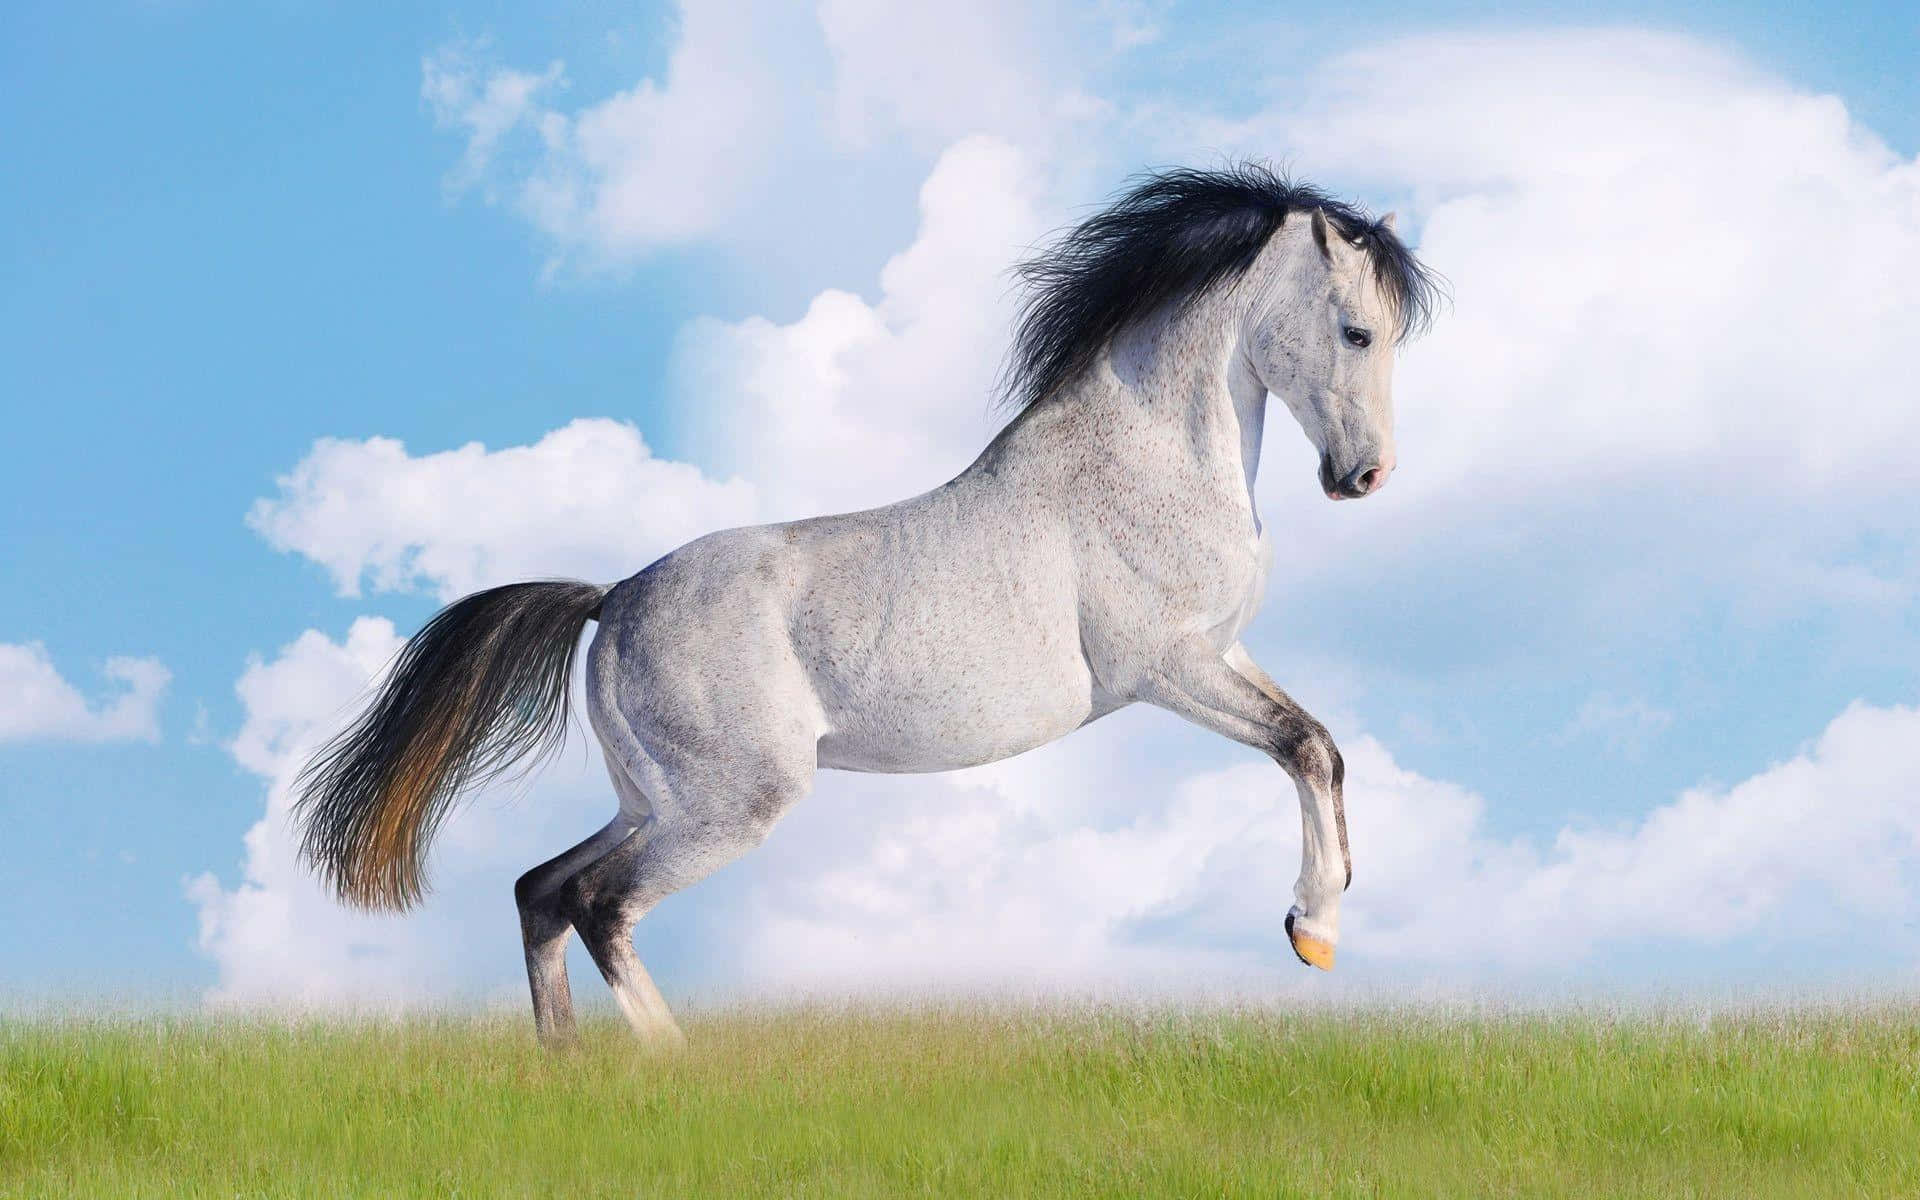 Majestic horse running through a field of tall grass